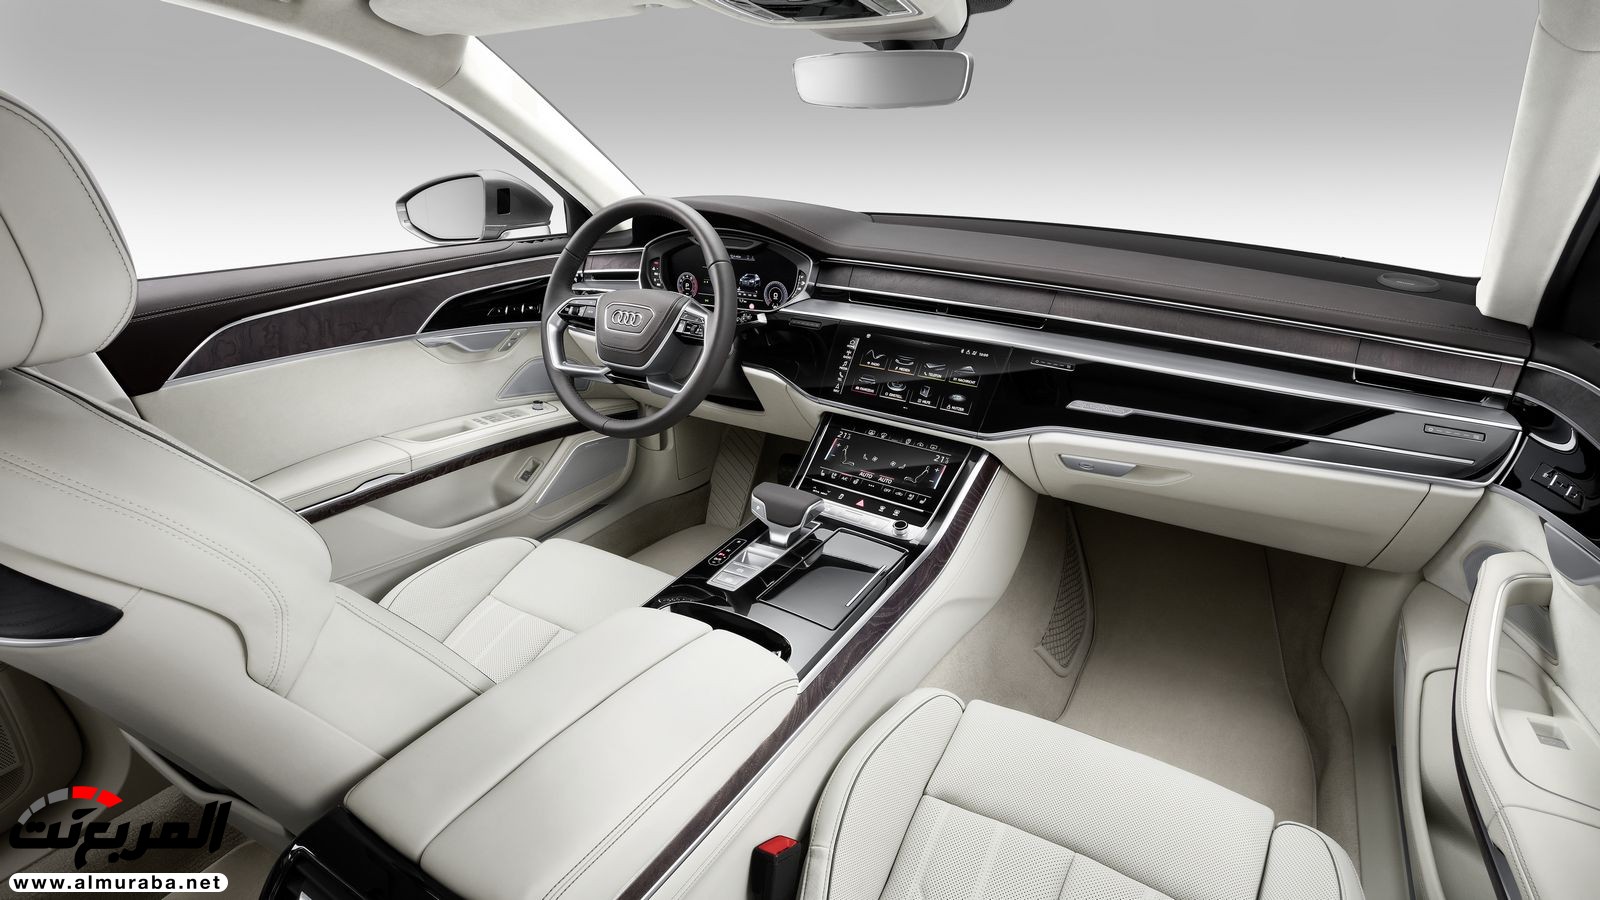 أودي A8 2018 الجديدة كلياً تكشف نفسها بتصميم وتقنيات متطورة "معلومات + 100 صورة" Audi A8 36